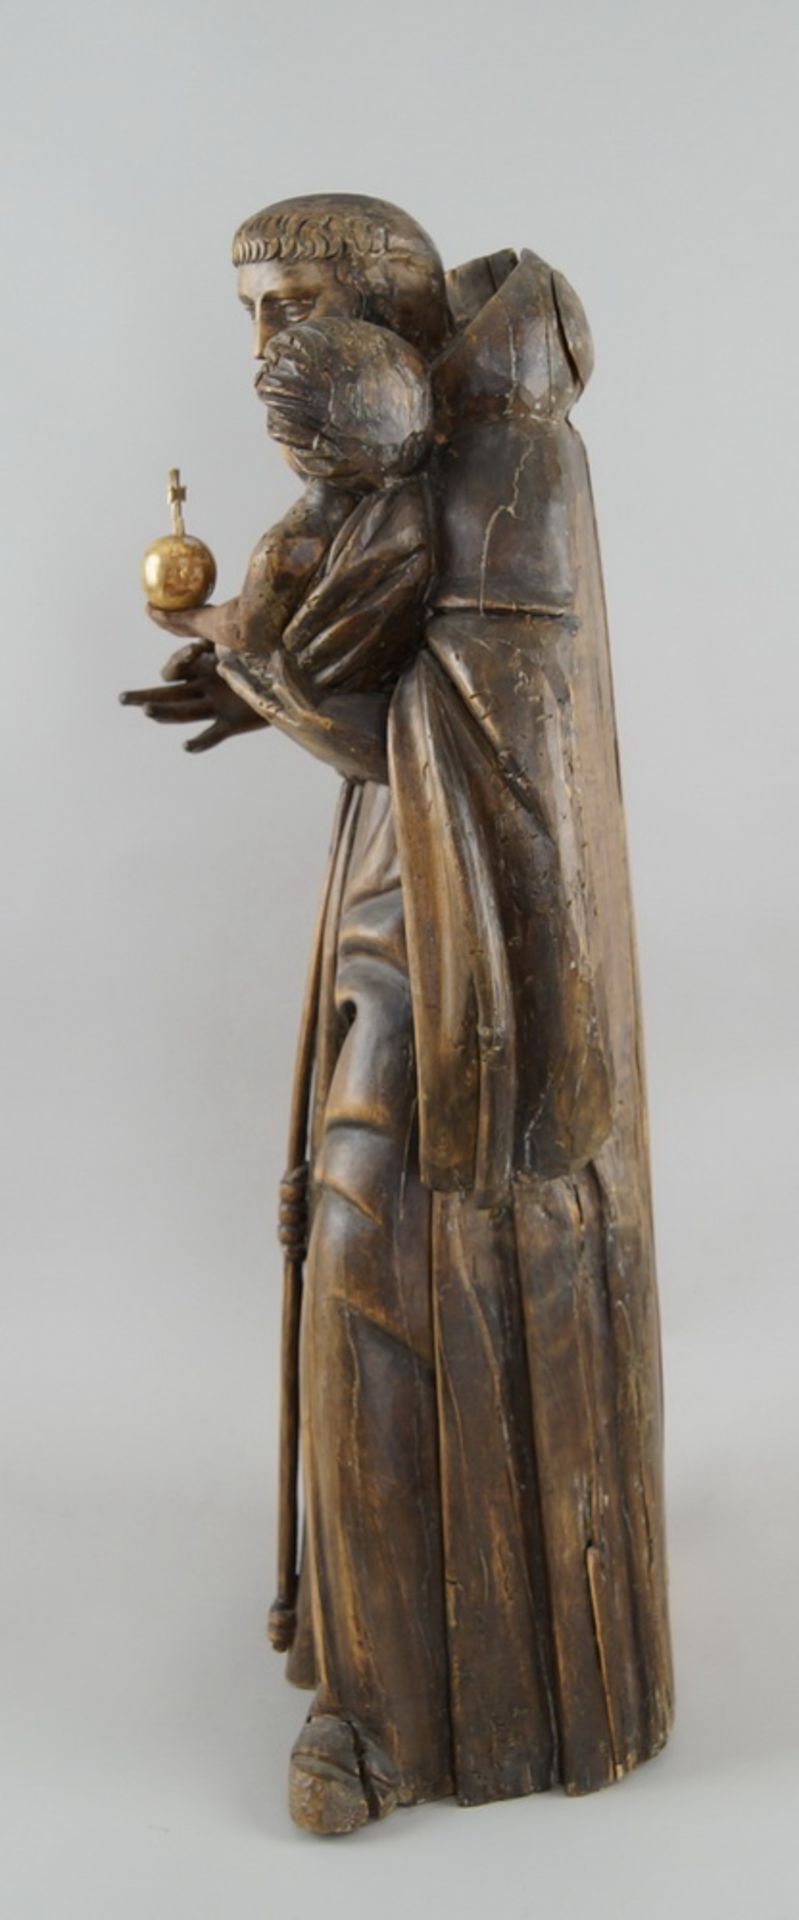 Heiliger Antonius mit Jesus auf dem Arm, um 1700, Holz geschnitzt, verso alter Zettel mitWidmung von - Bild 6 aus 8